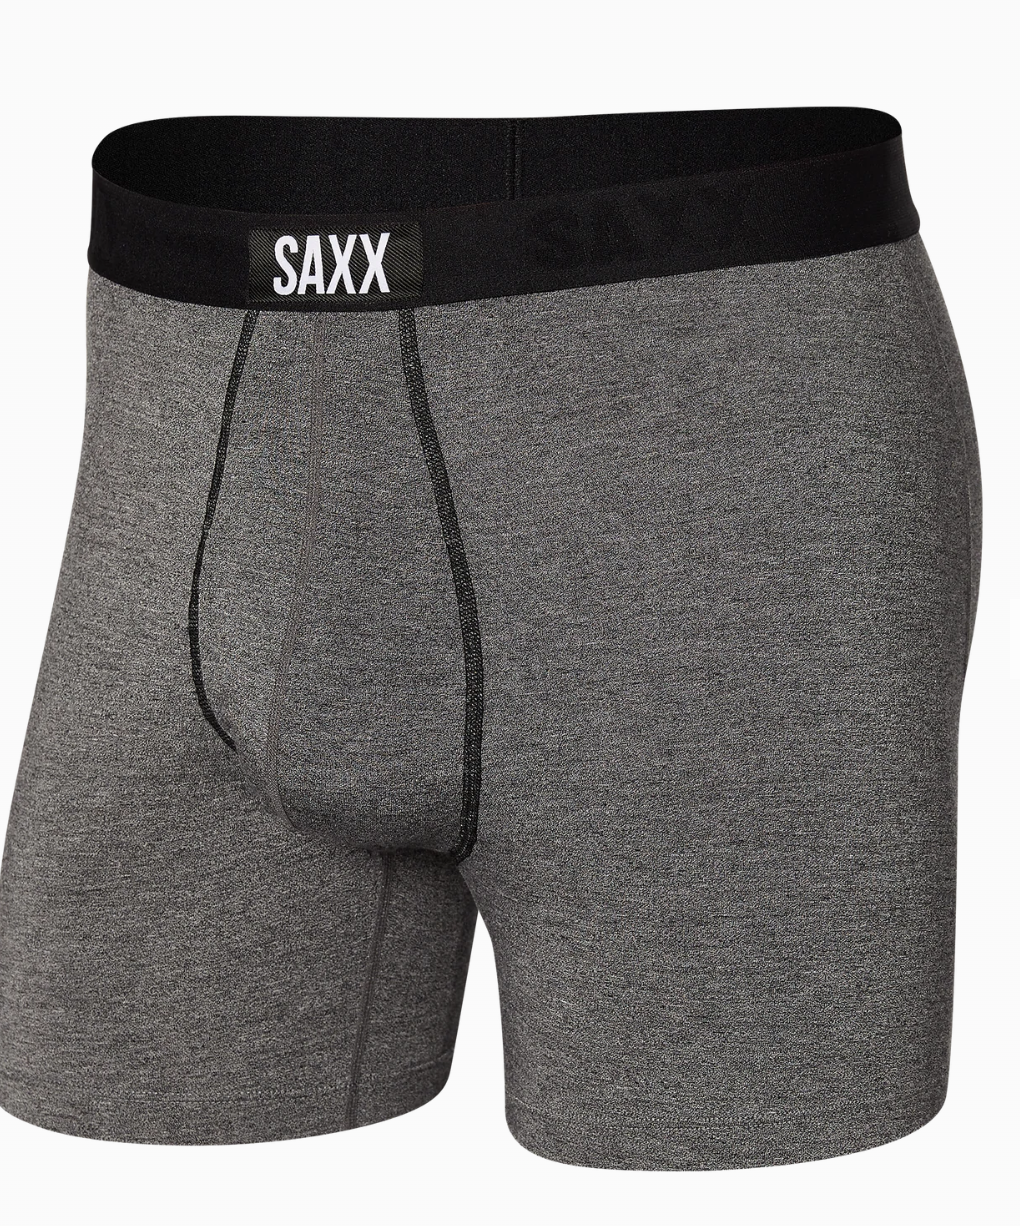 SAXX- ULTRA Boxer Brief